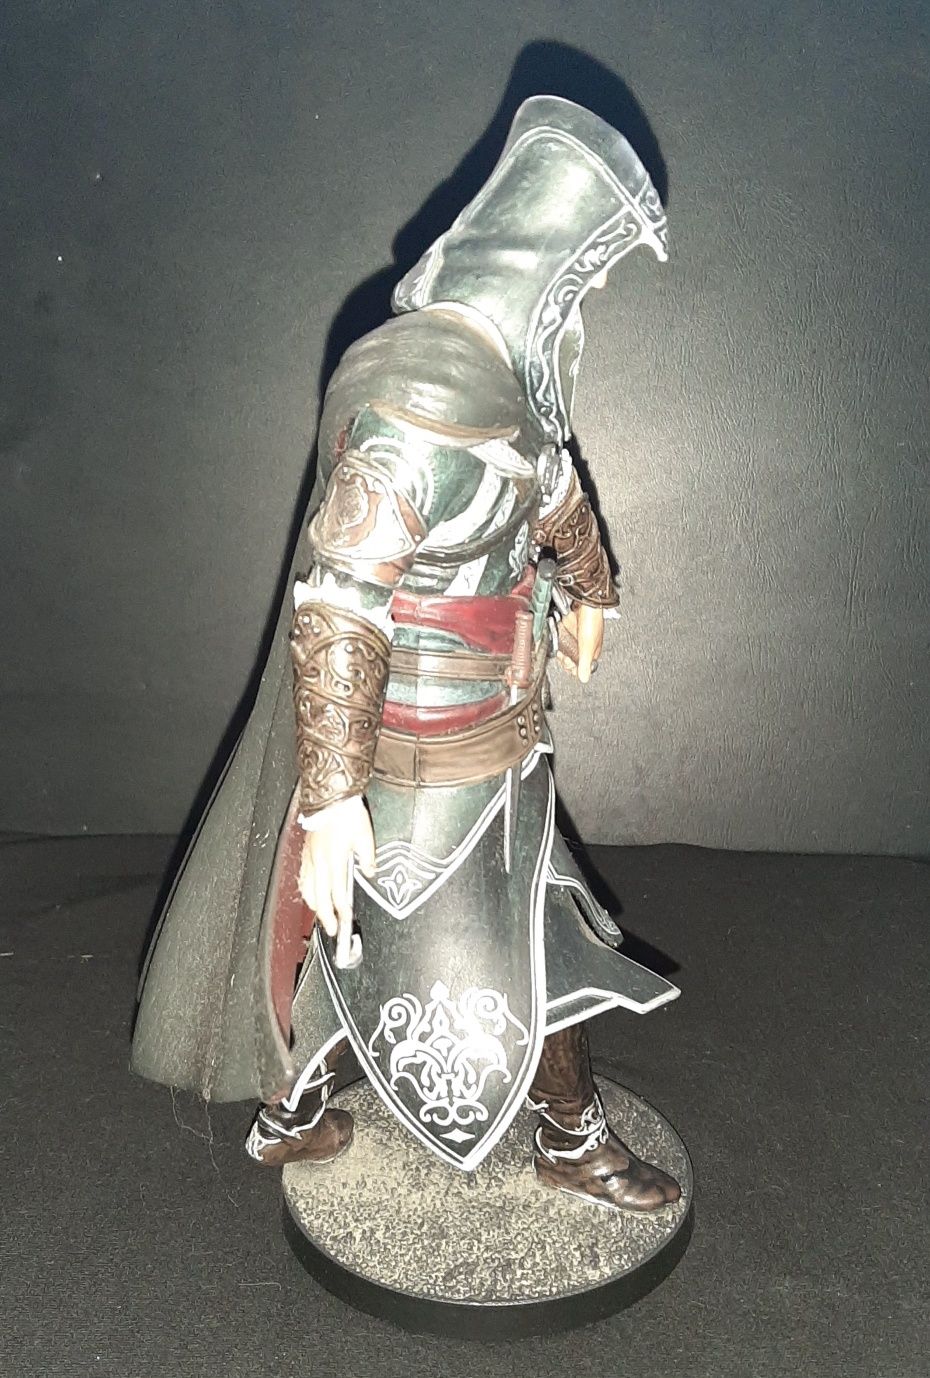 Vendo Estátua/Figura Assassin's Creed Revelations (Ezio)